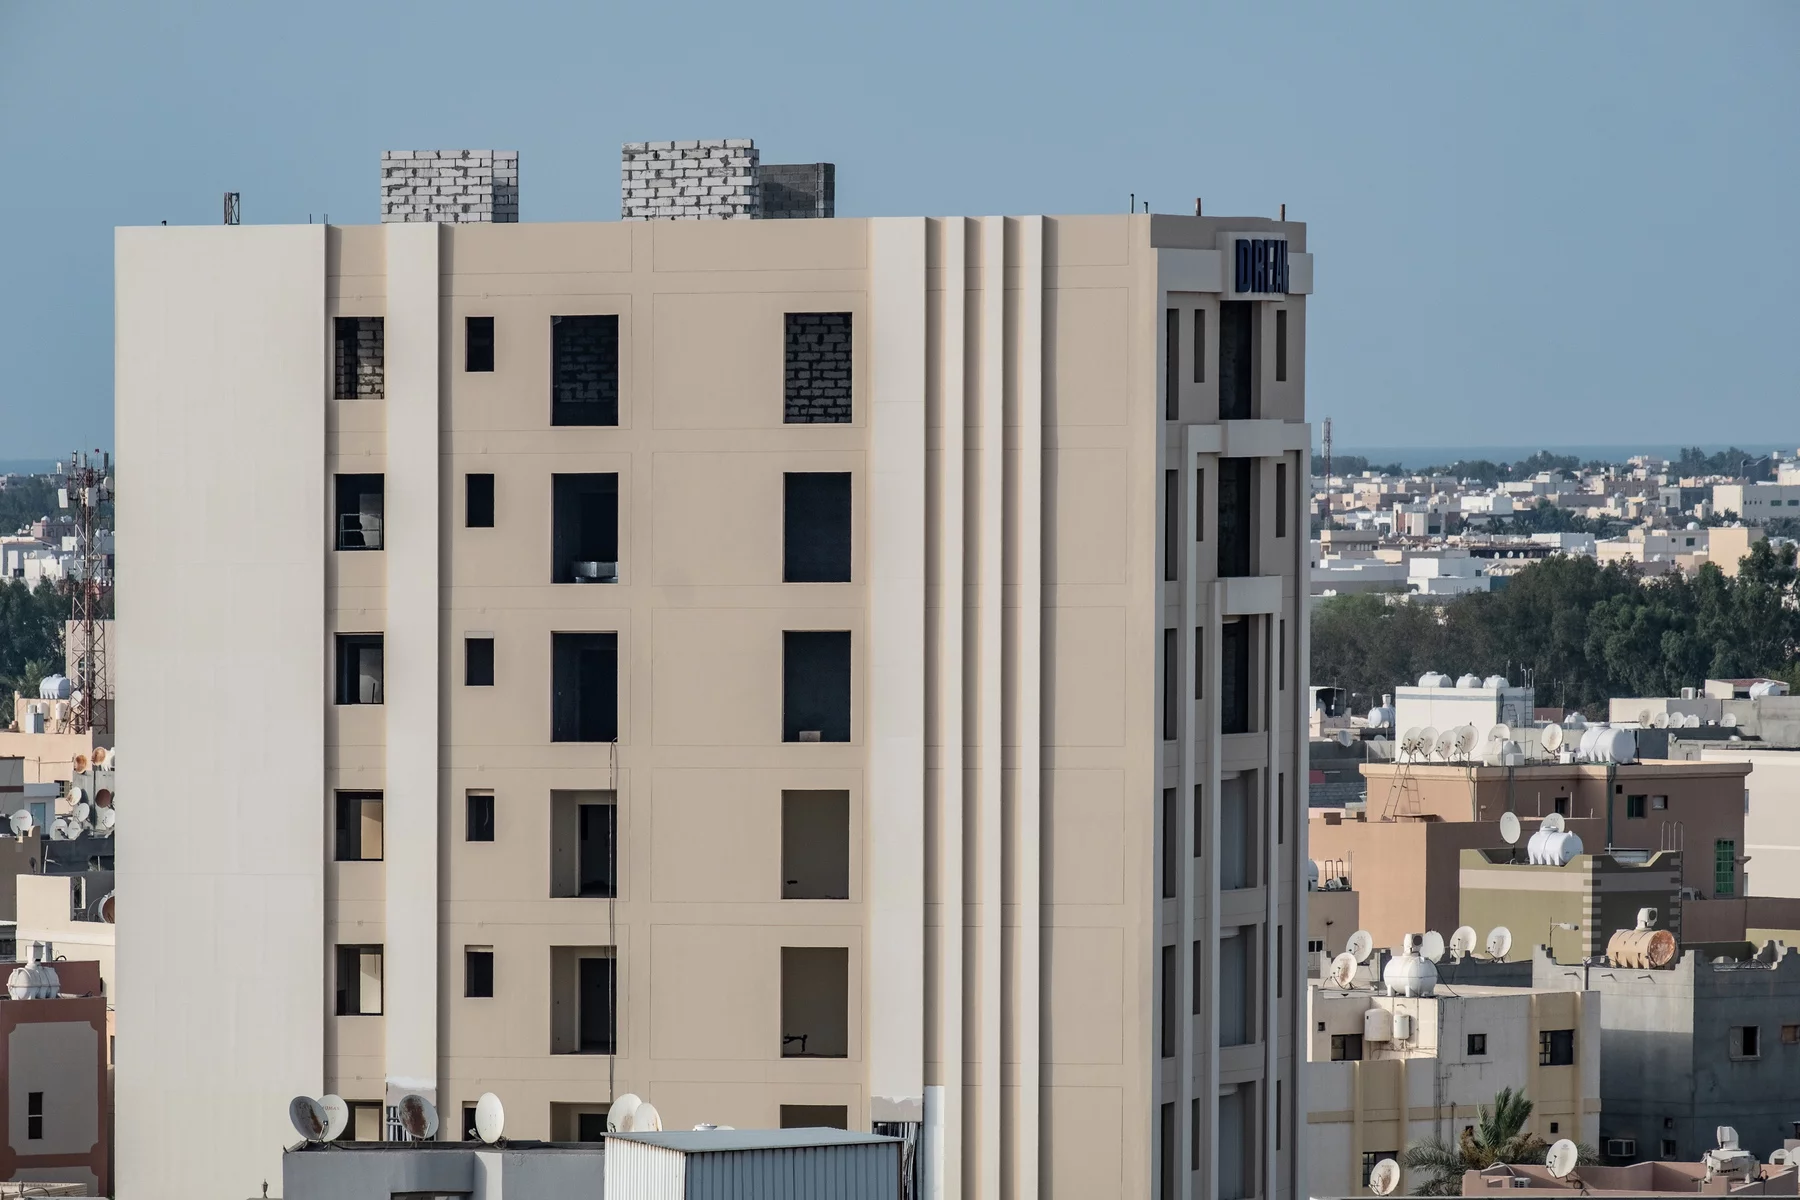 Apartment buildings in Saudi Arabia